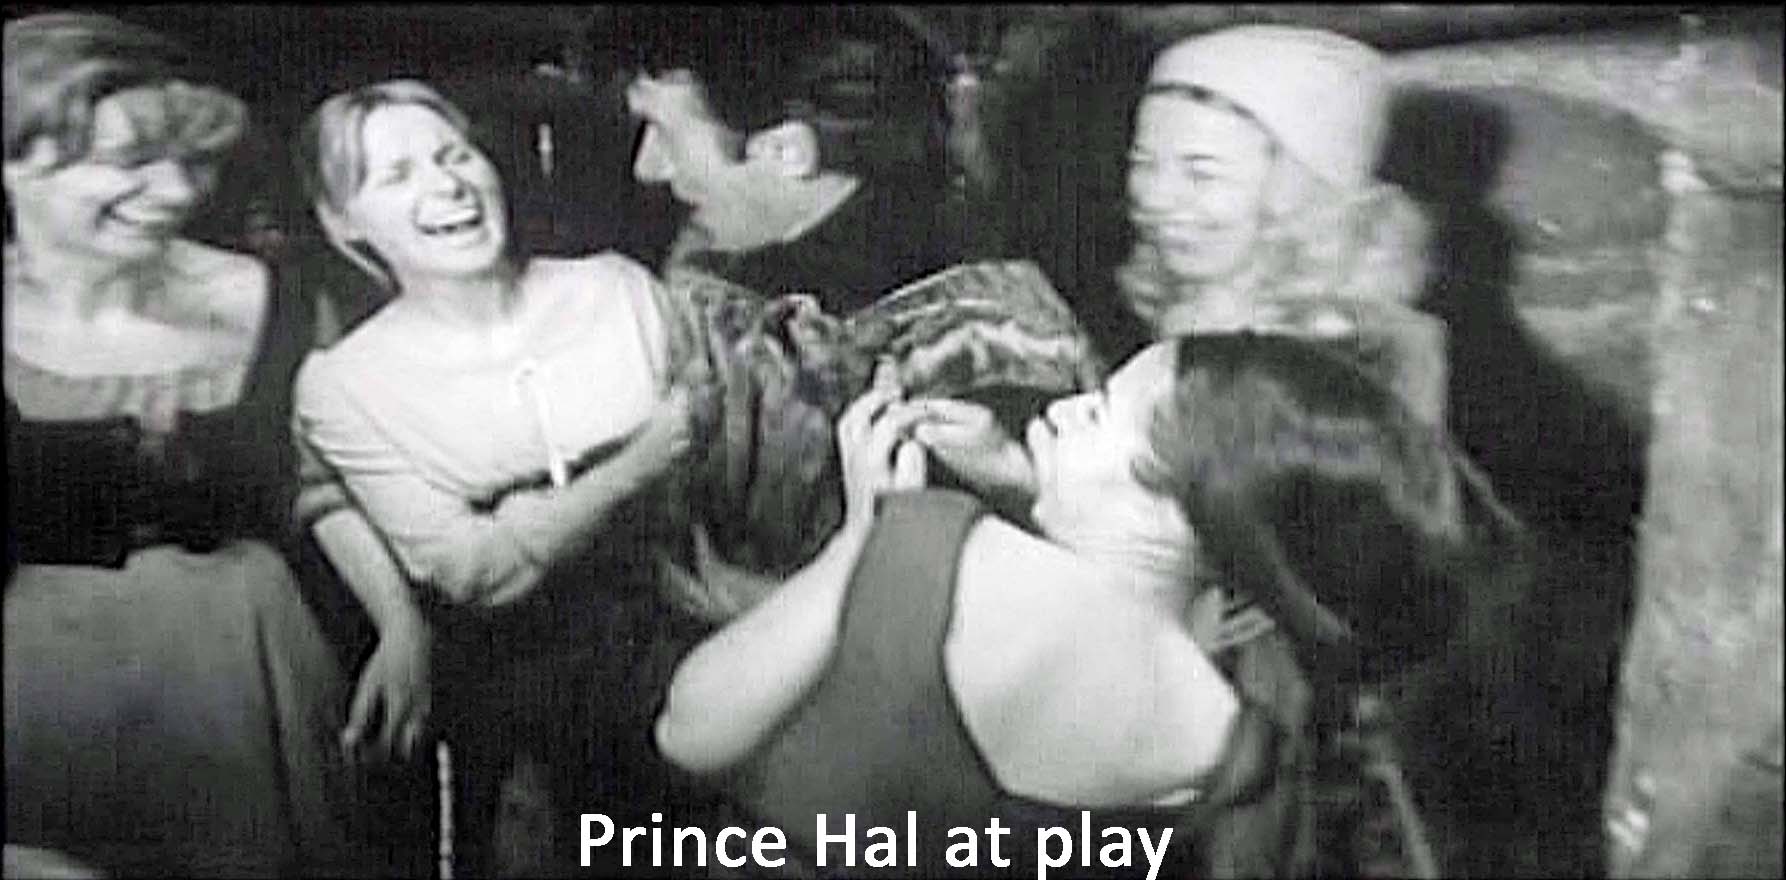 Prince Hal at play